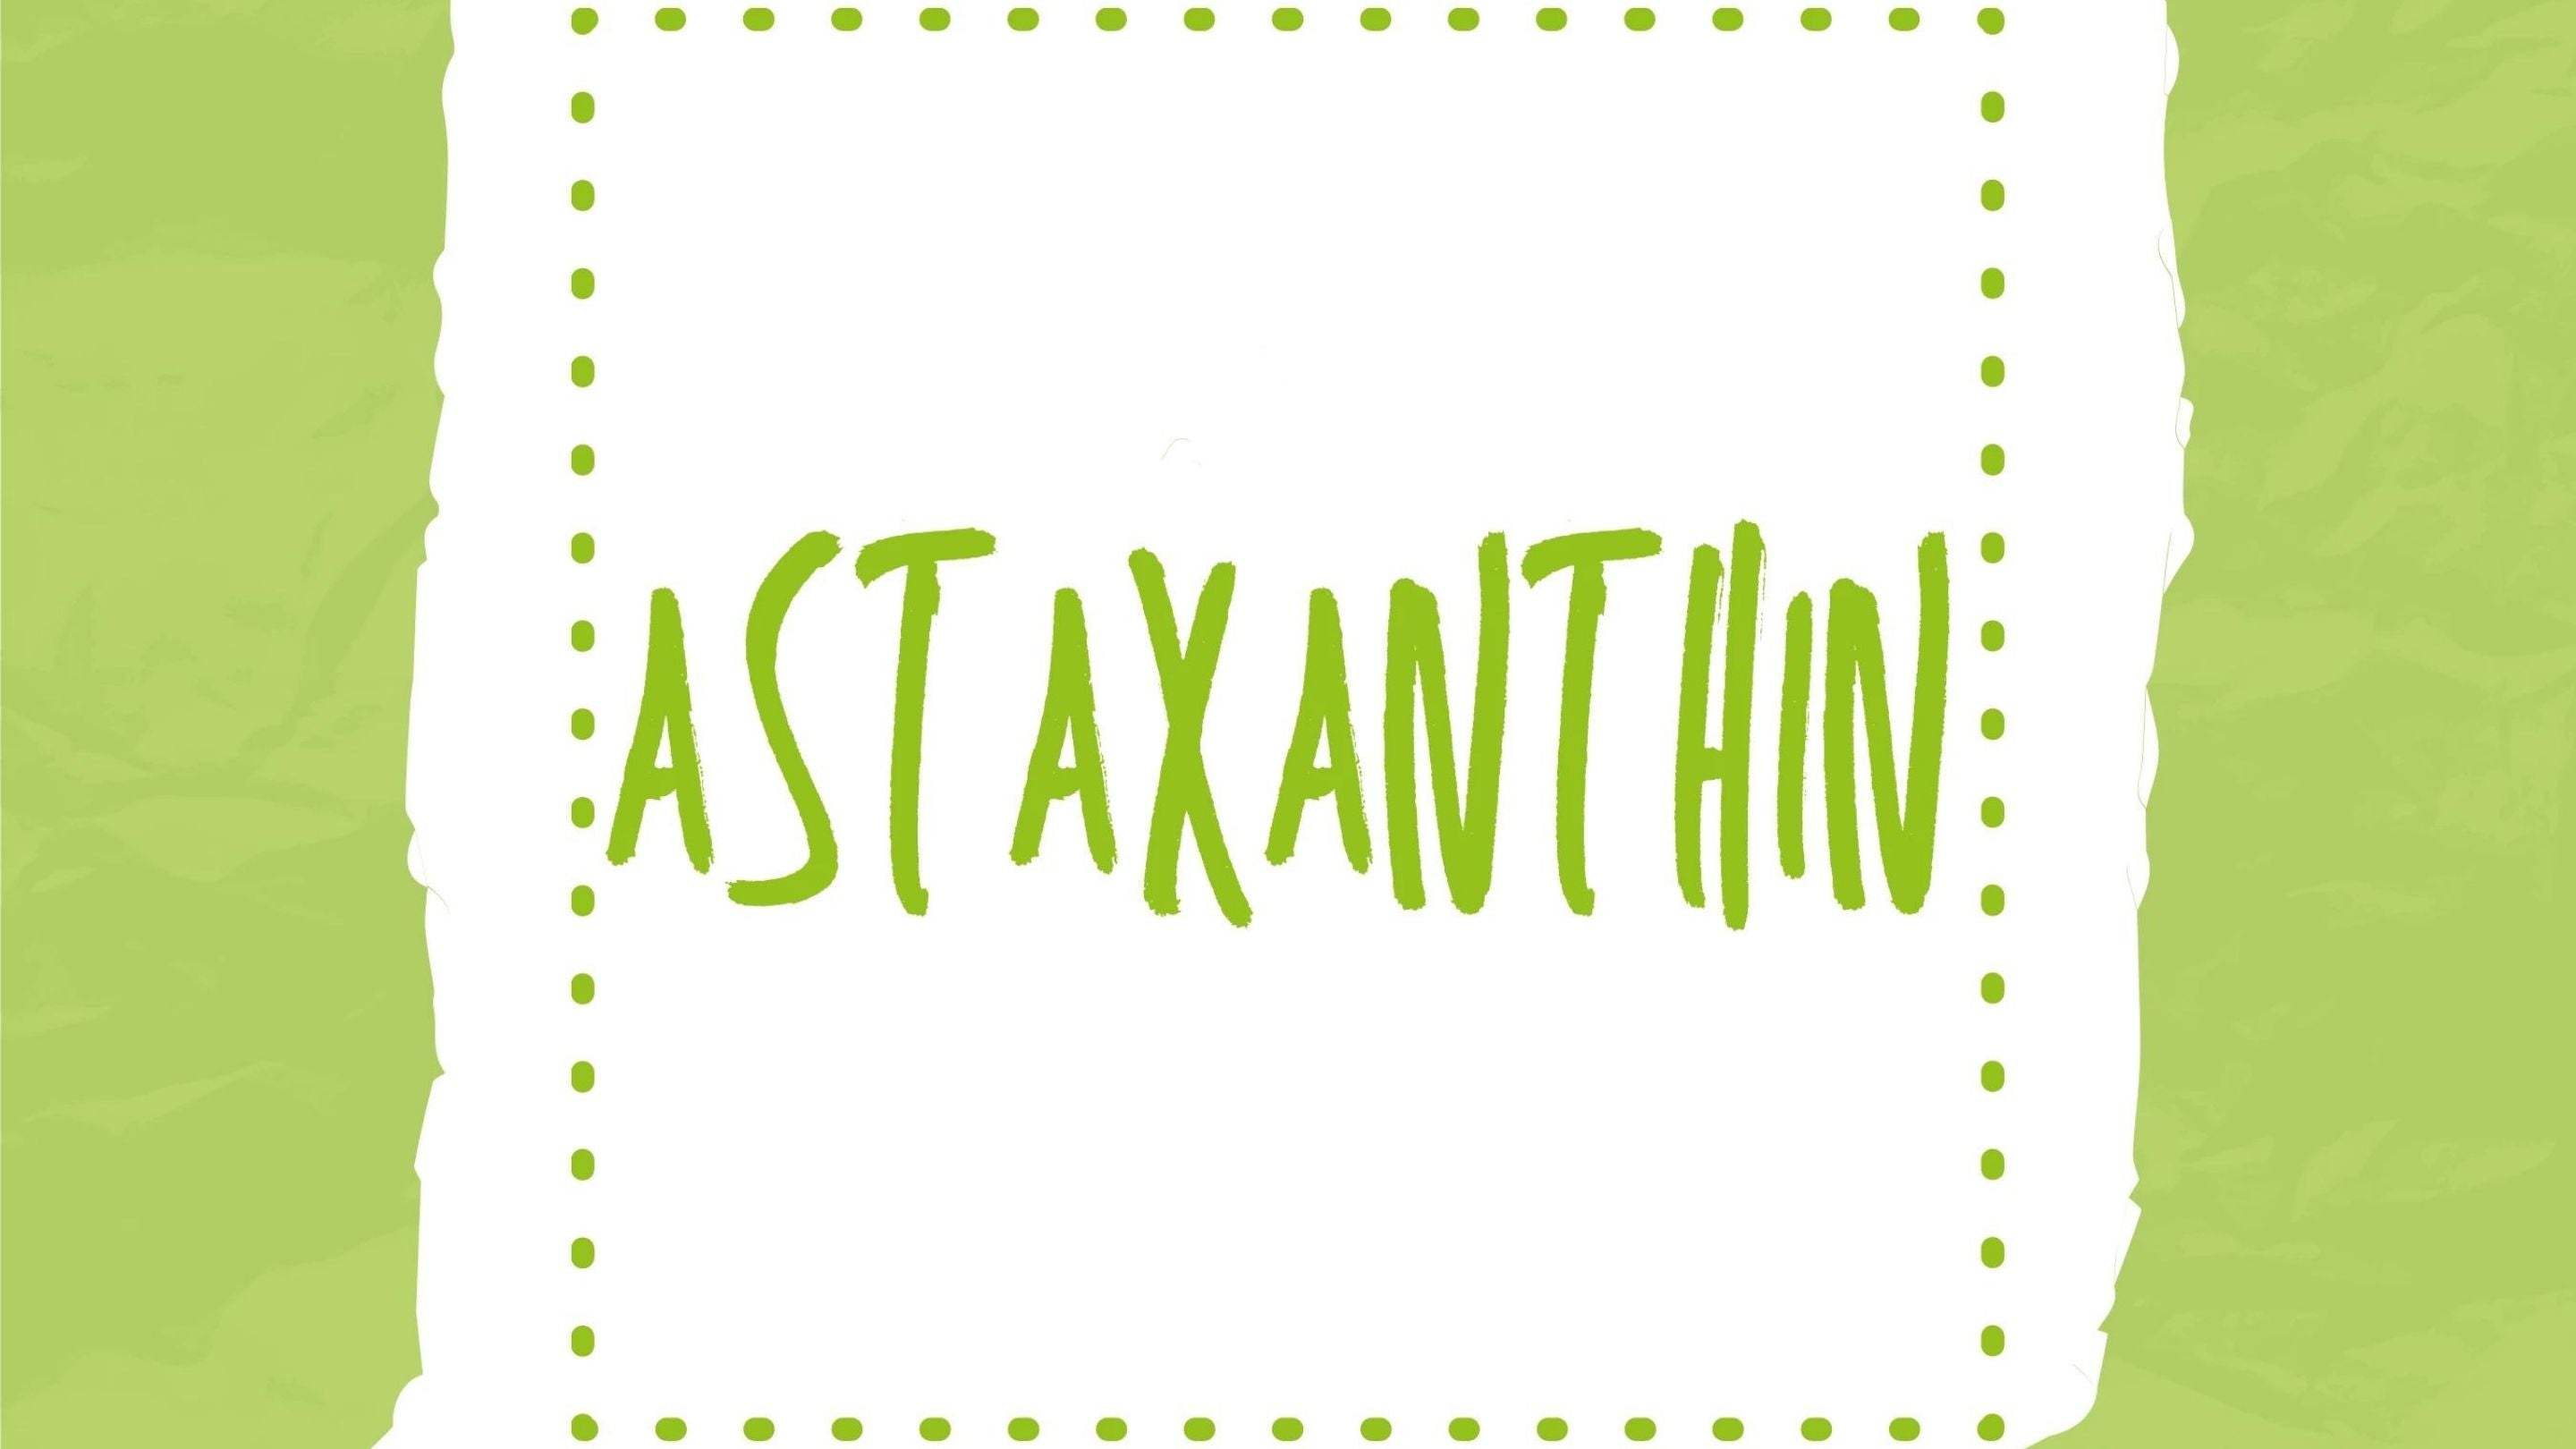 Astaxanthin-Wirkung: Für gesunde Augen und ein fittes Gehirn